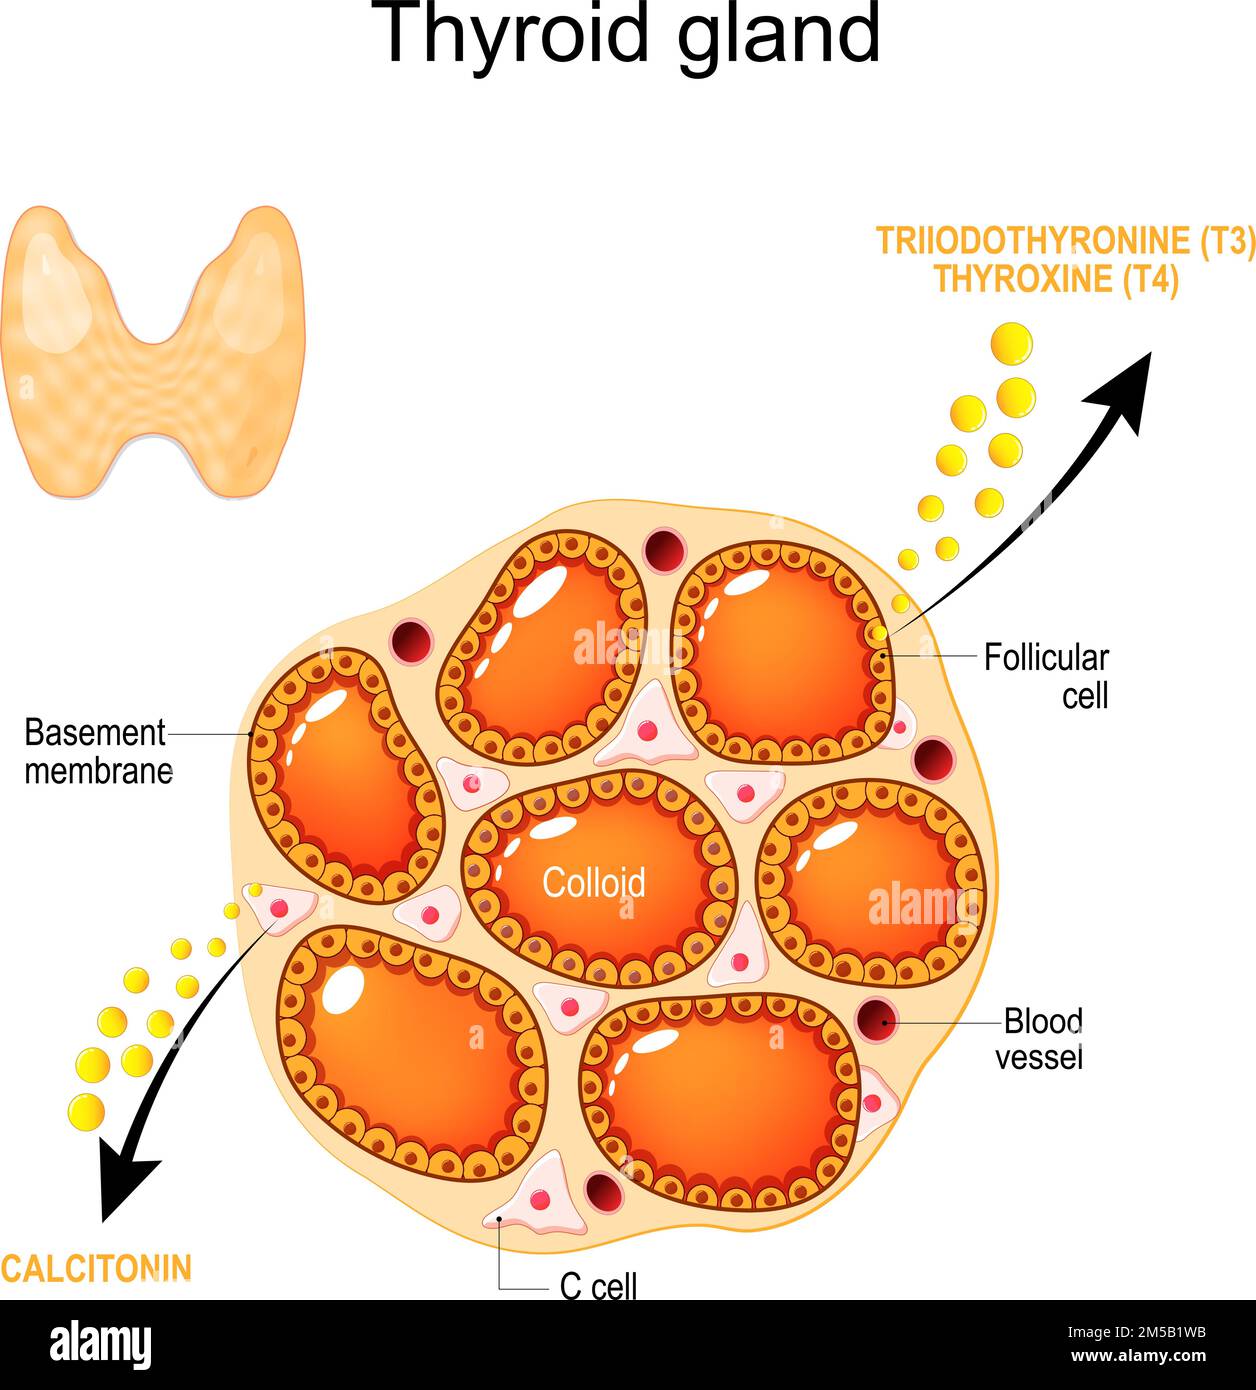 anatomia e fisiologia della ghiandola tiroidea. Struttura di una tiroide umana. Cellule follicolari, membrana basale, vasi sanguigni, cellule C e colloidi Illustrazione Vettoriale